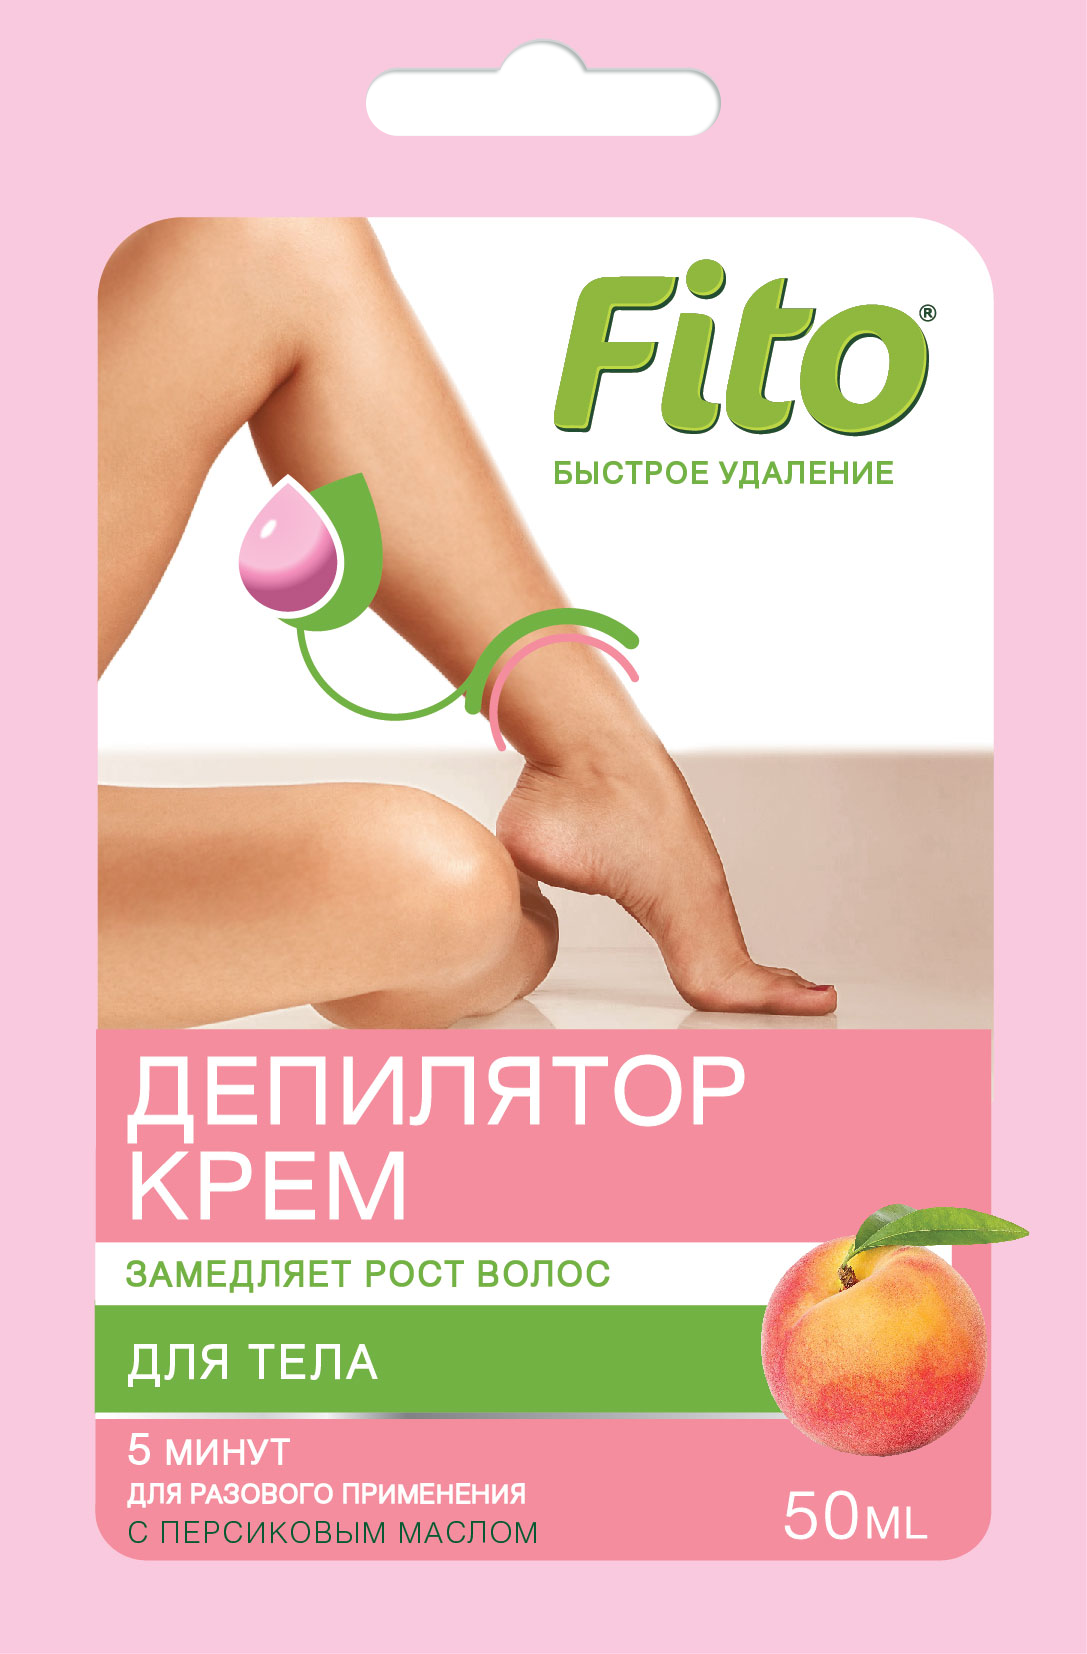 Крем для депиляции Fito Быстрое удаление  с персиковым маслом 50мл - в интернет-магазине tut-beauty.by